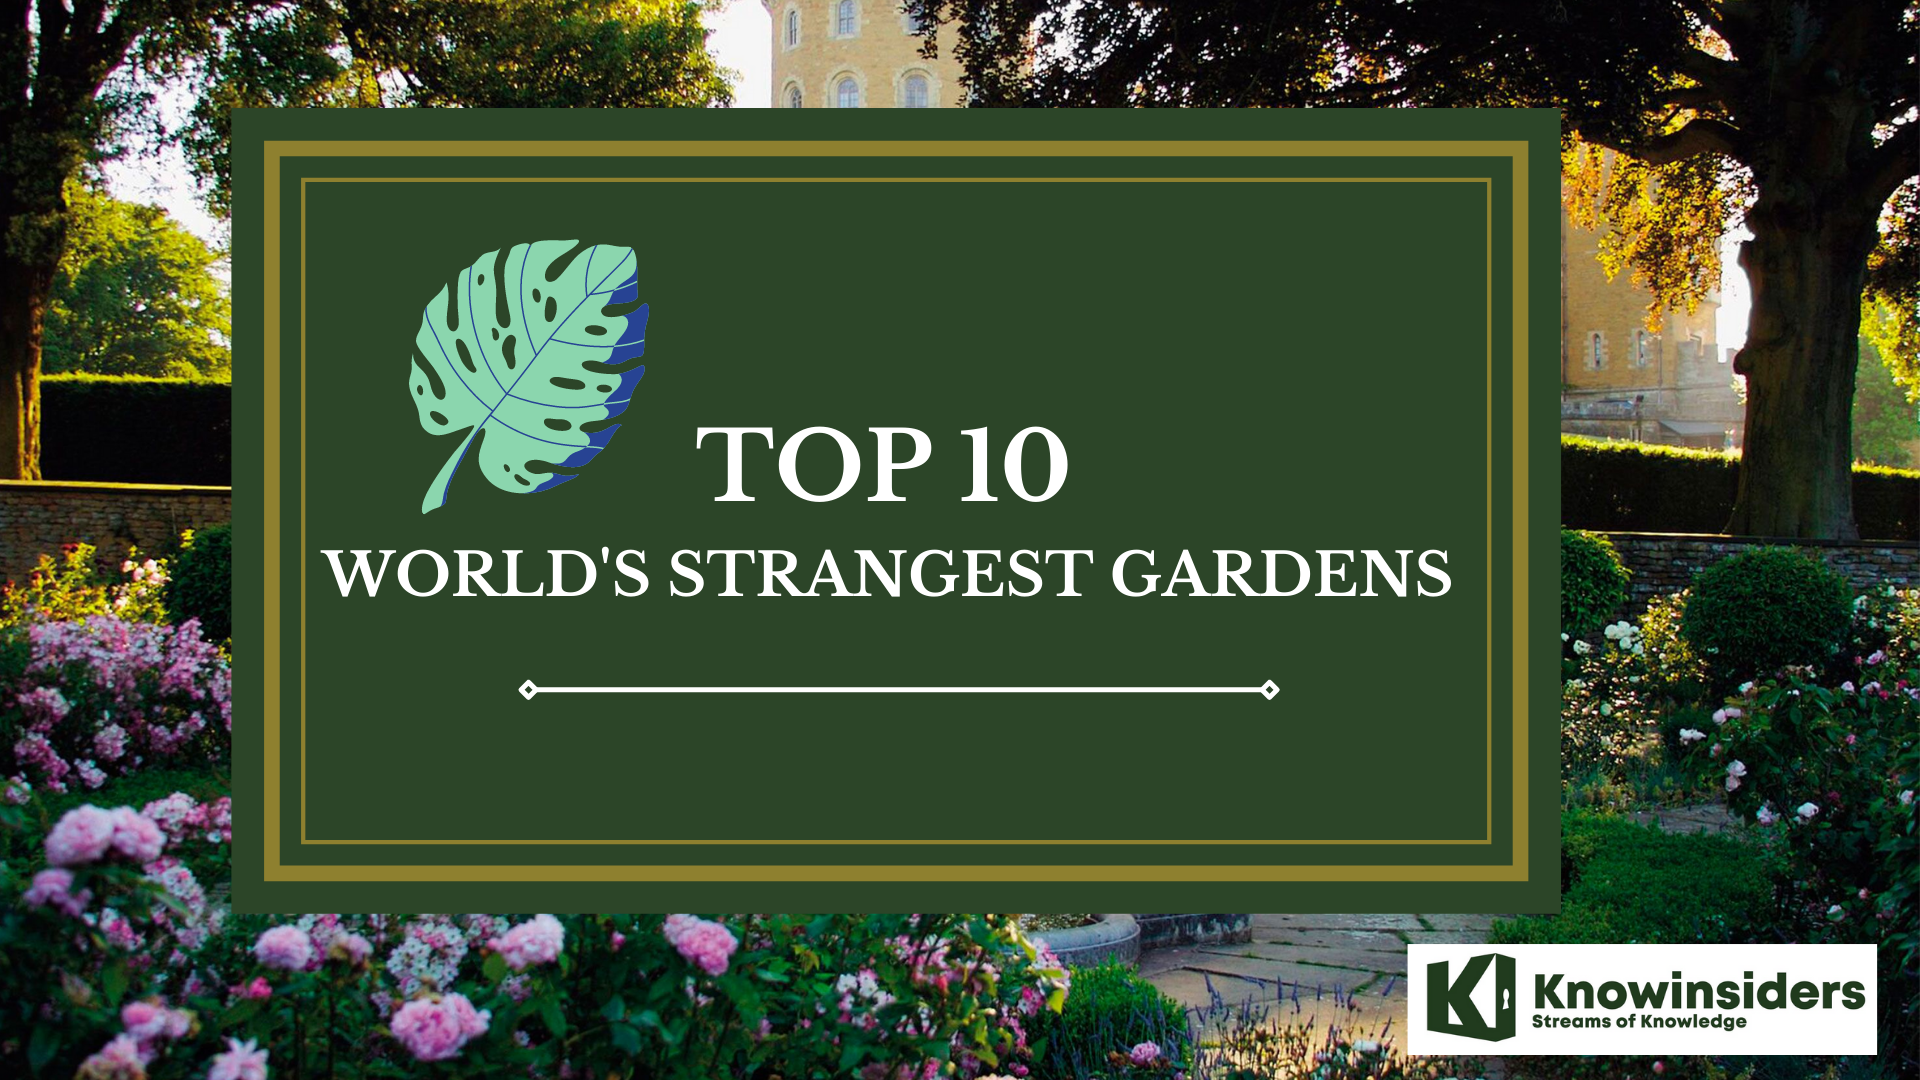 Top 10 Most Beautiful But Weirdest Gardens in the World